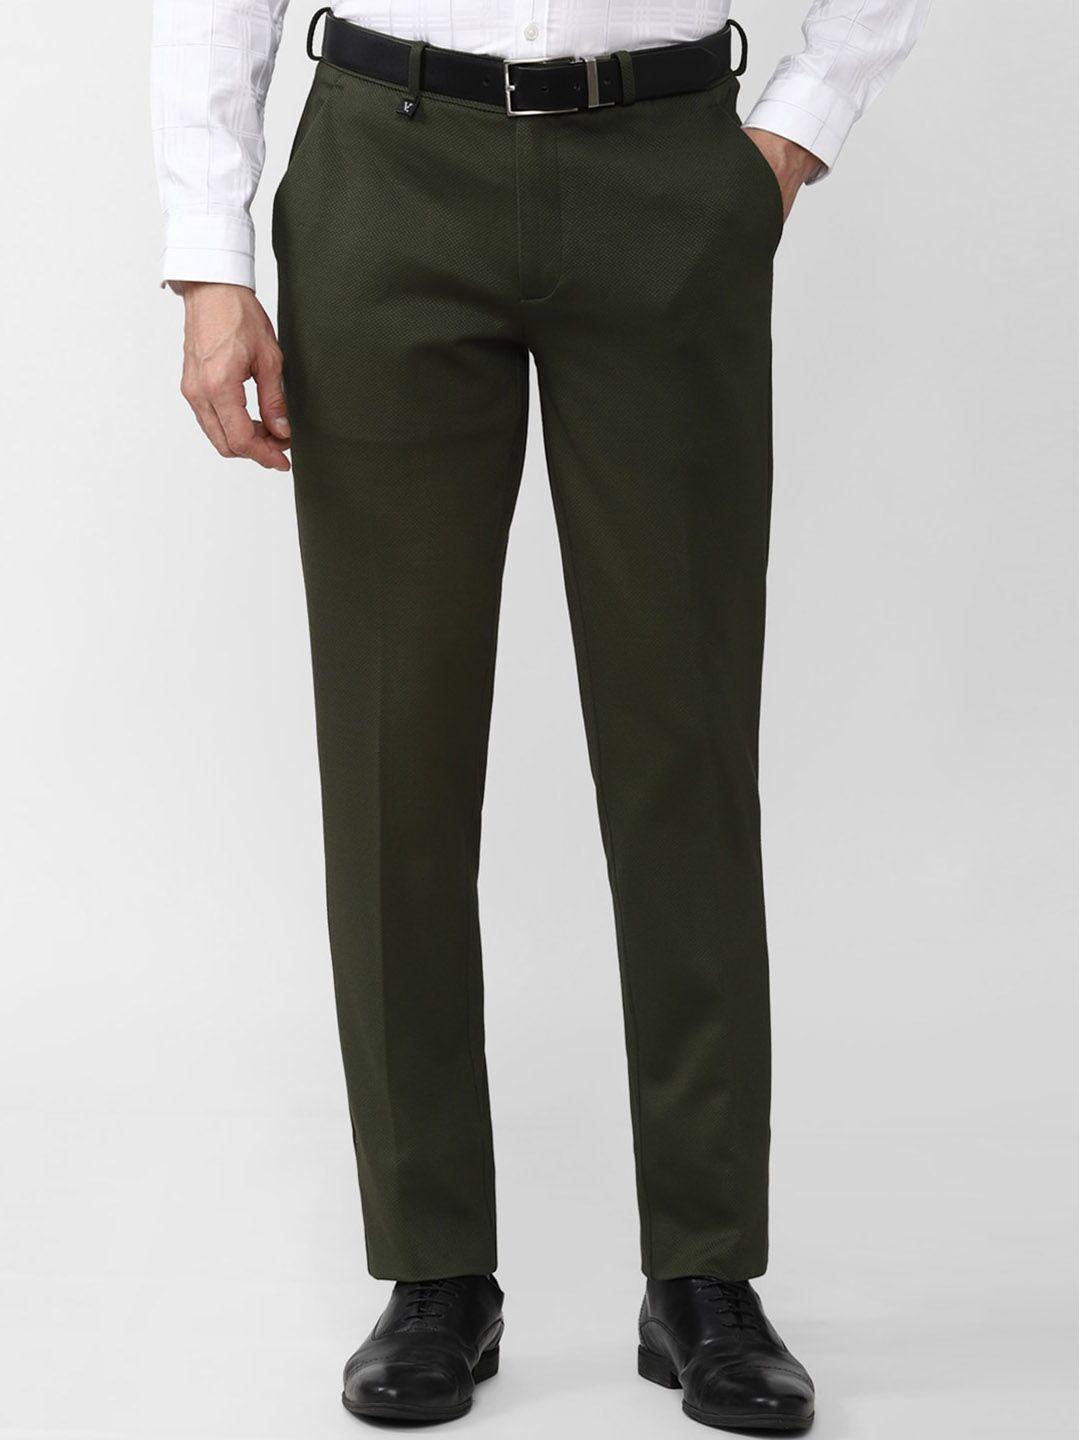 v-dot-men-olive-green-trousers